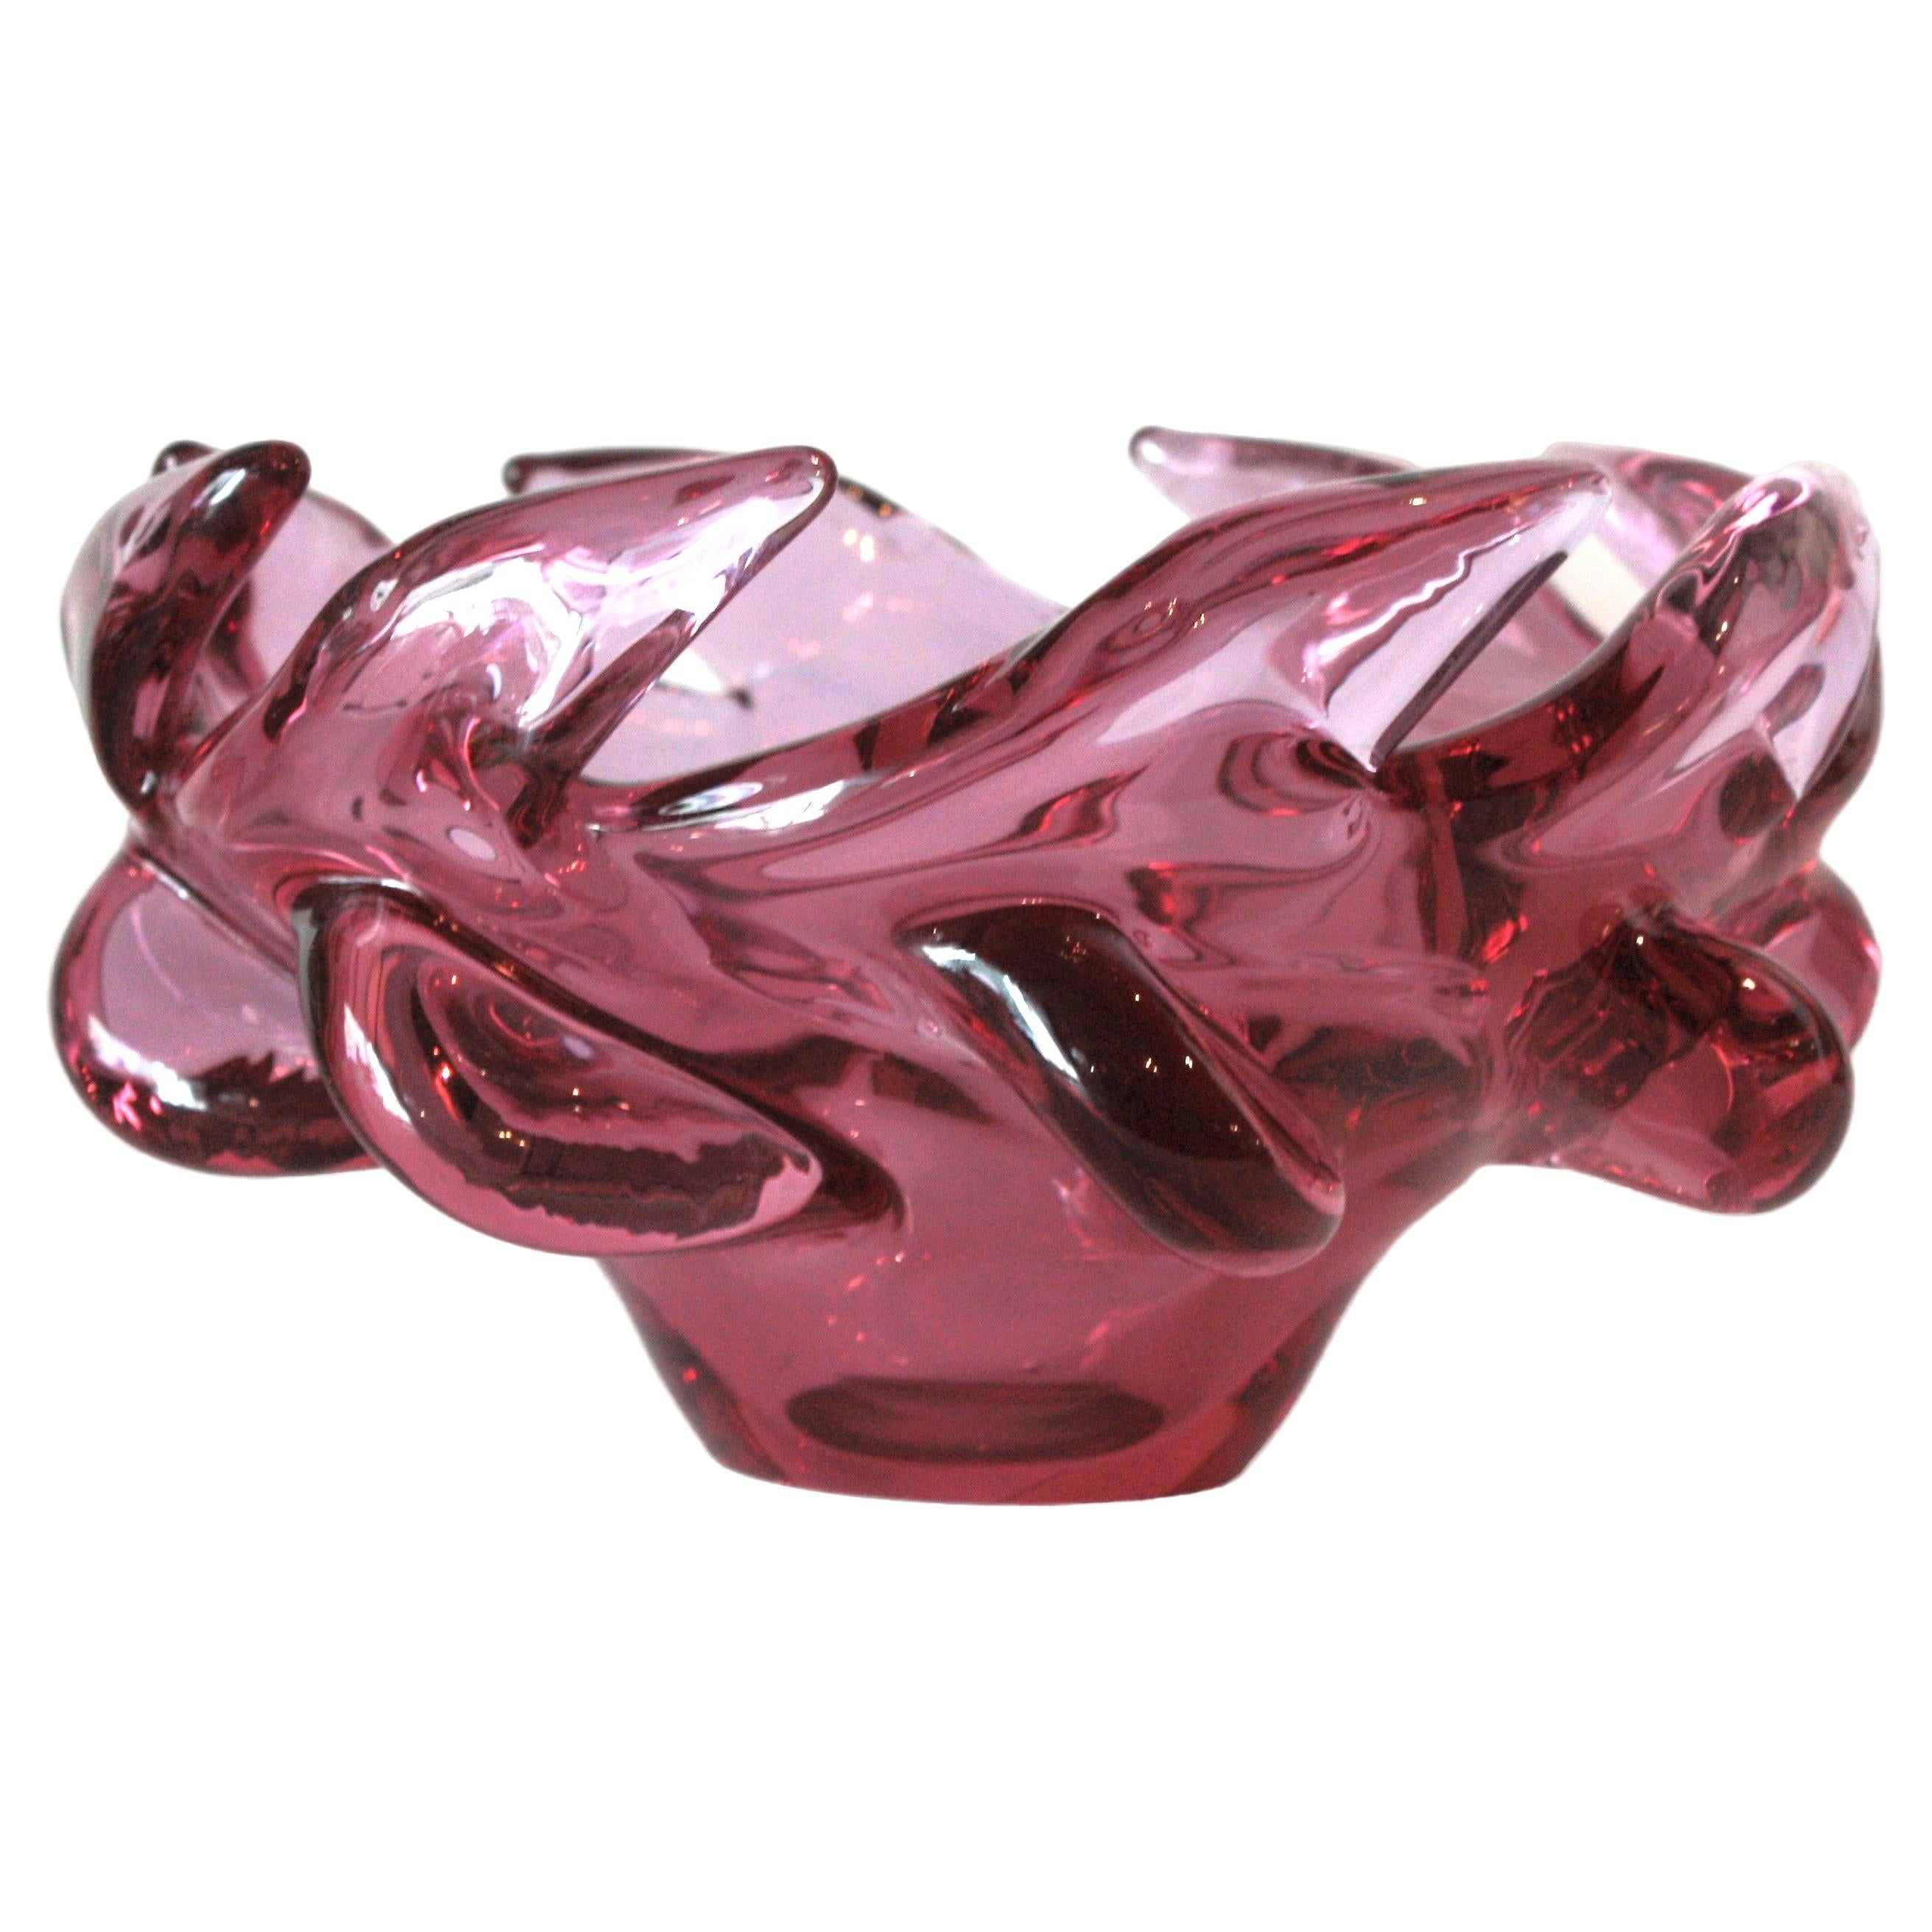 Grand centre de table en verre rose de Murano soufflé à la bouche. Attribué à Archimede Seguso, Italie, années 1950.
Ce bol accrocheur est fabriqué en verre rose violet soufflé à la main, avec un bord festonné et des détails tirés.
Magnifique pour